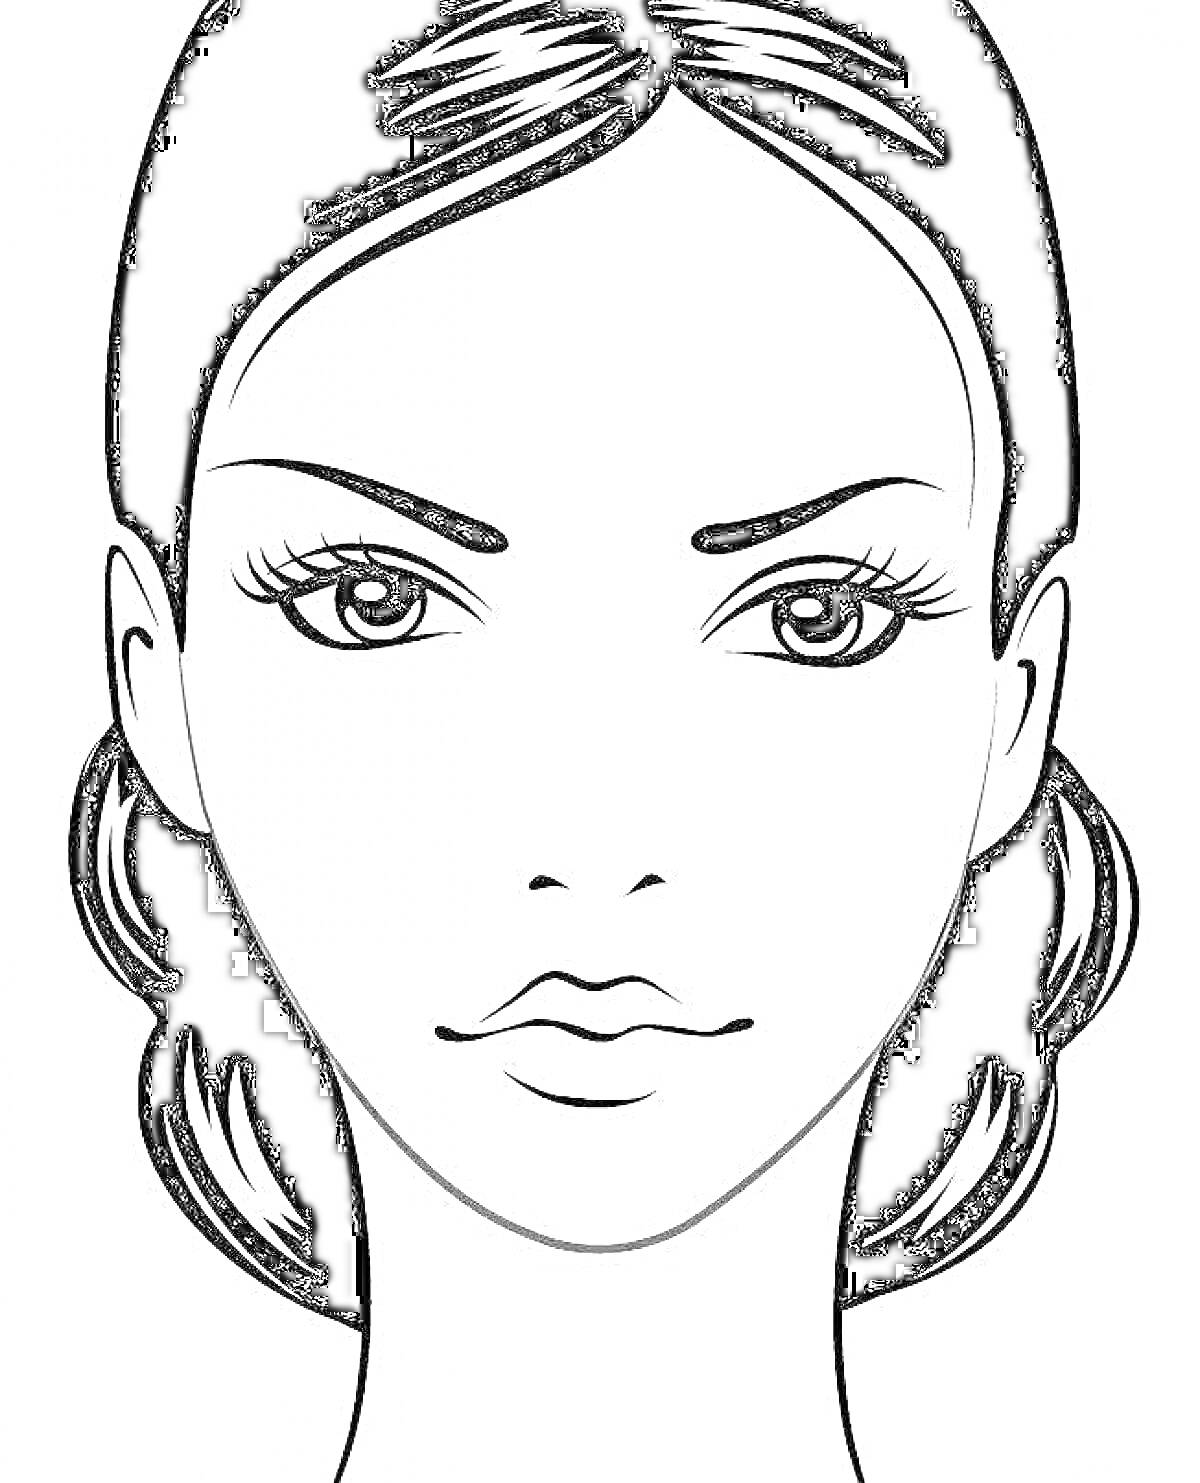 Раскраска Лицо девушки с длинными распущенными волосами, большими выразительными глазами, тонкими бровями и кокетливой улыбкой